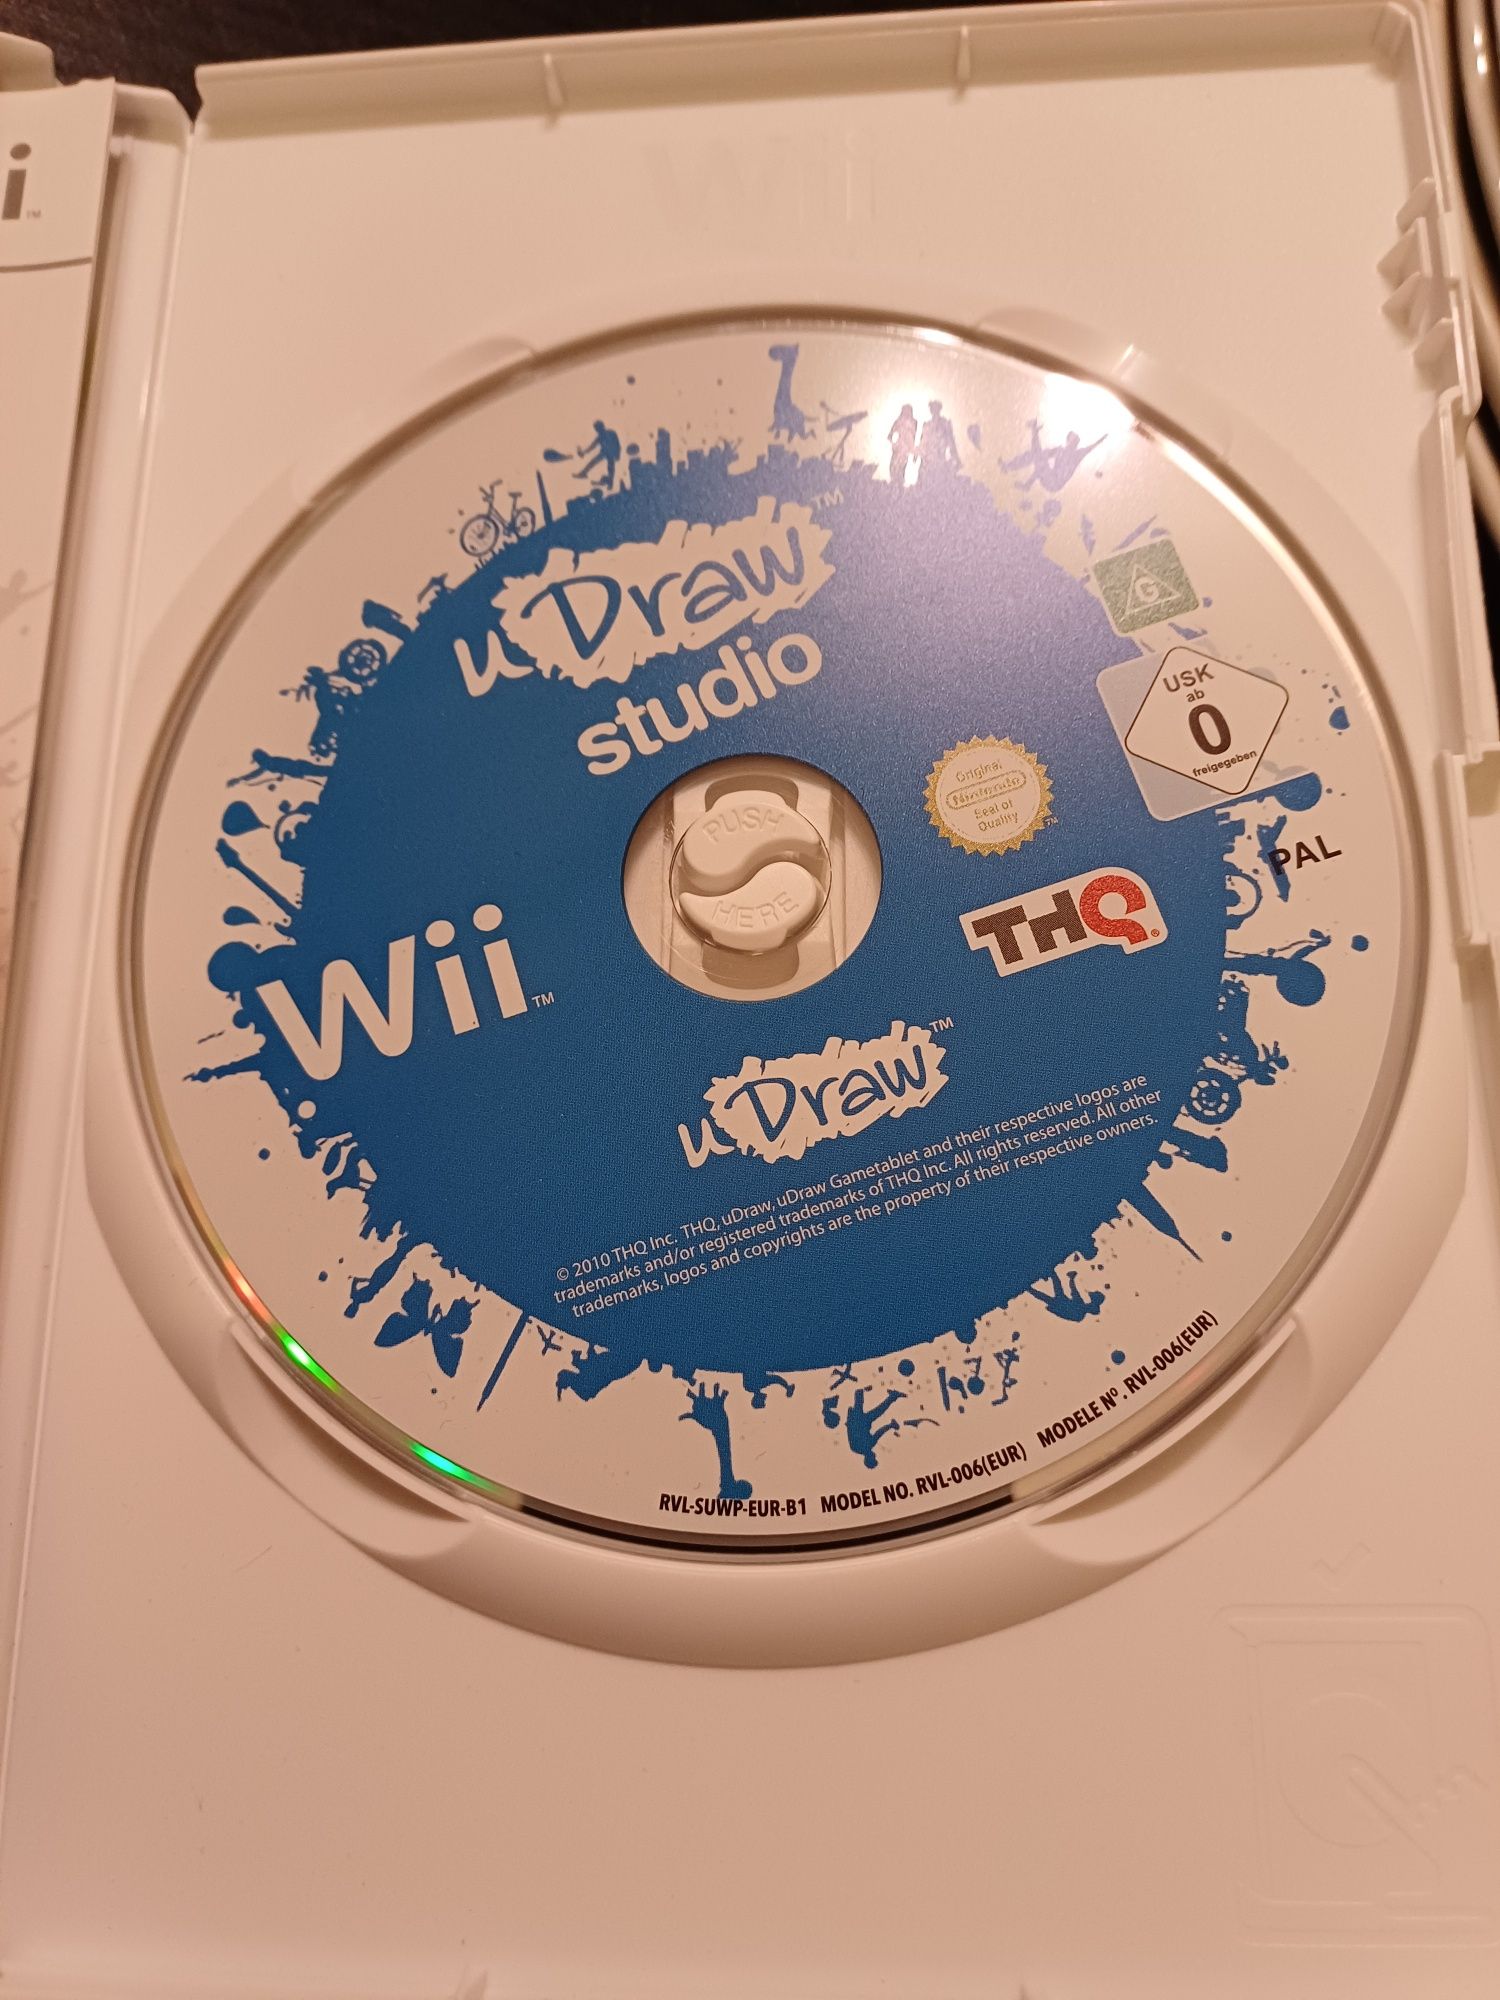 Wii u Draw Studio Nintendo